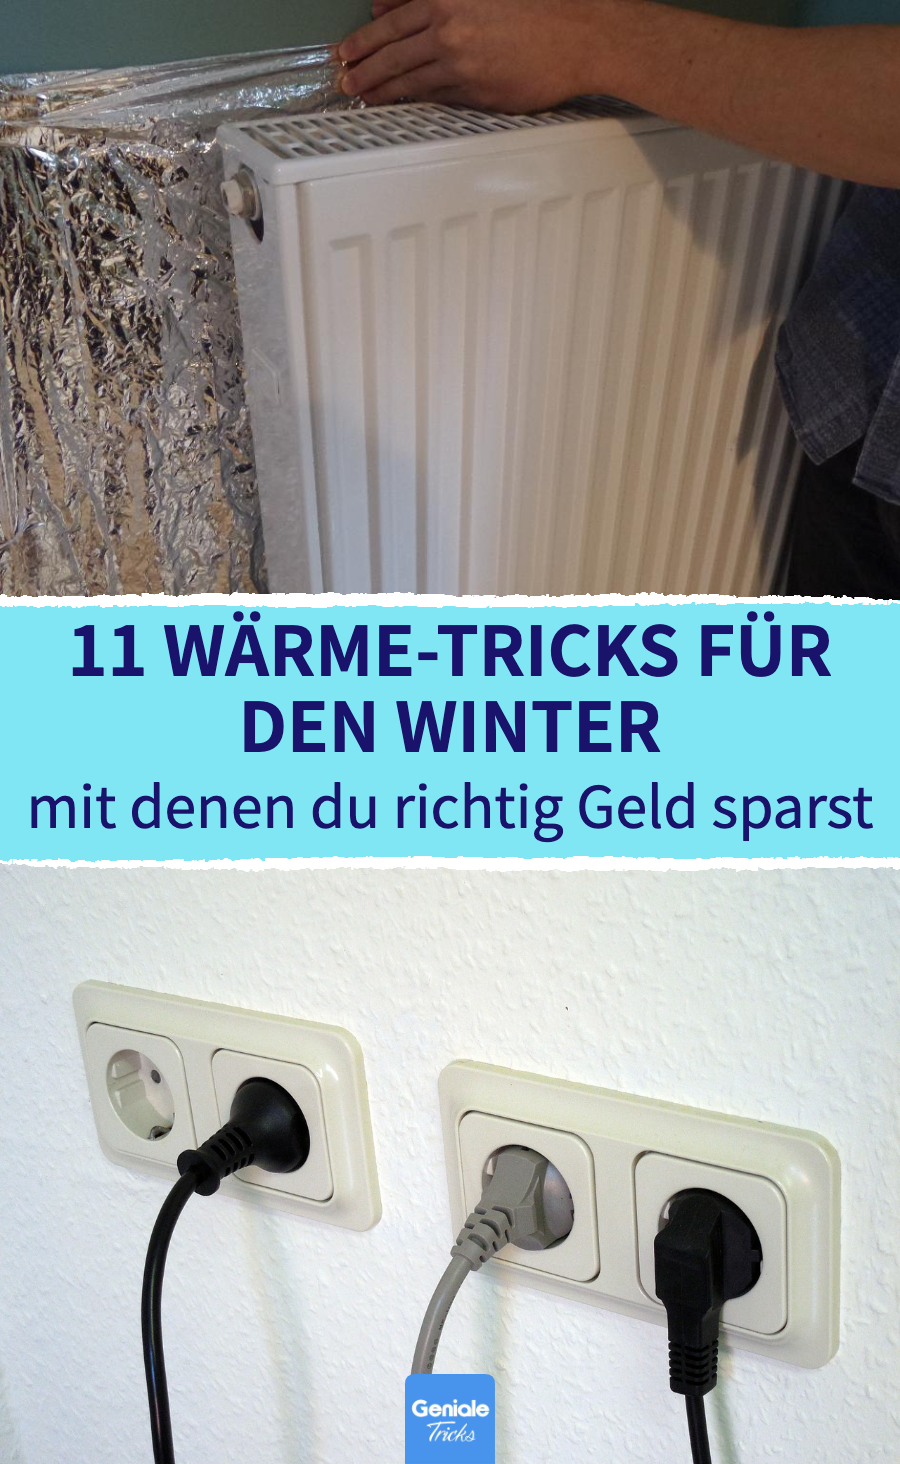 11 Wärme-Tricks für den Winter, mit denen du richtig Geld sparst